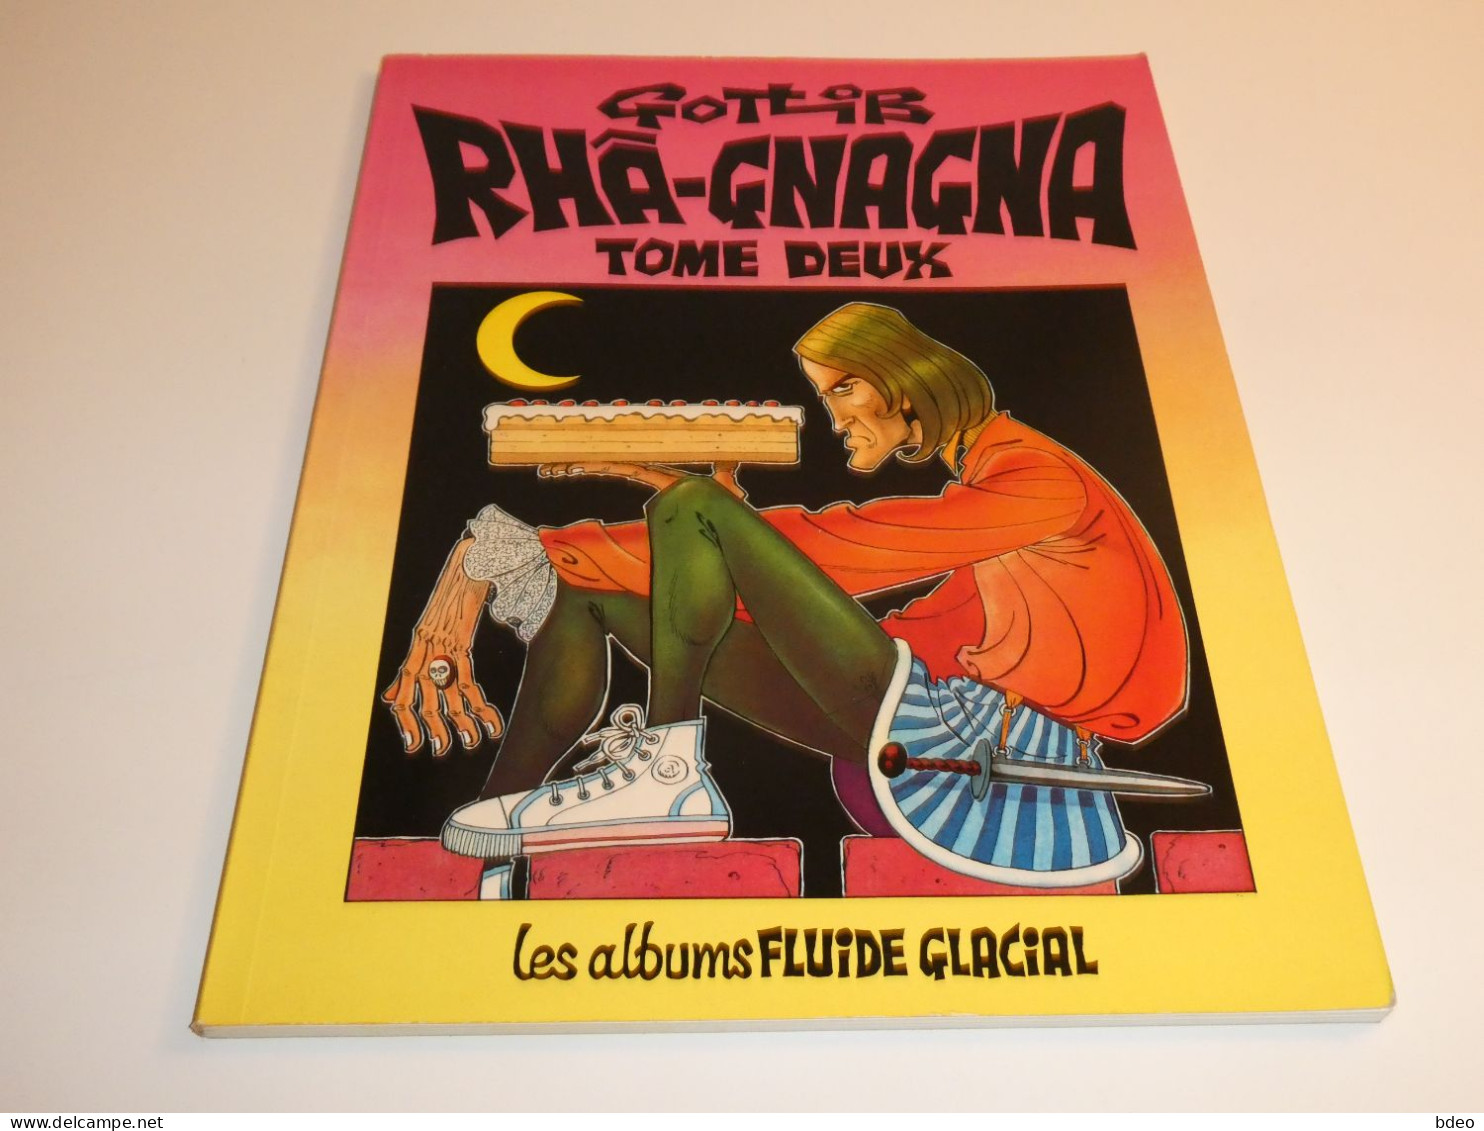 RHA-GNAGNA TOME 2 / GOTLIB / TBE - Original Edition - French